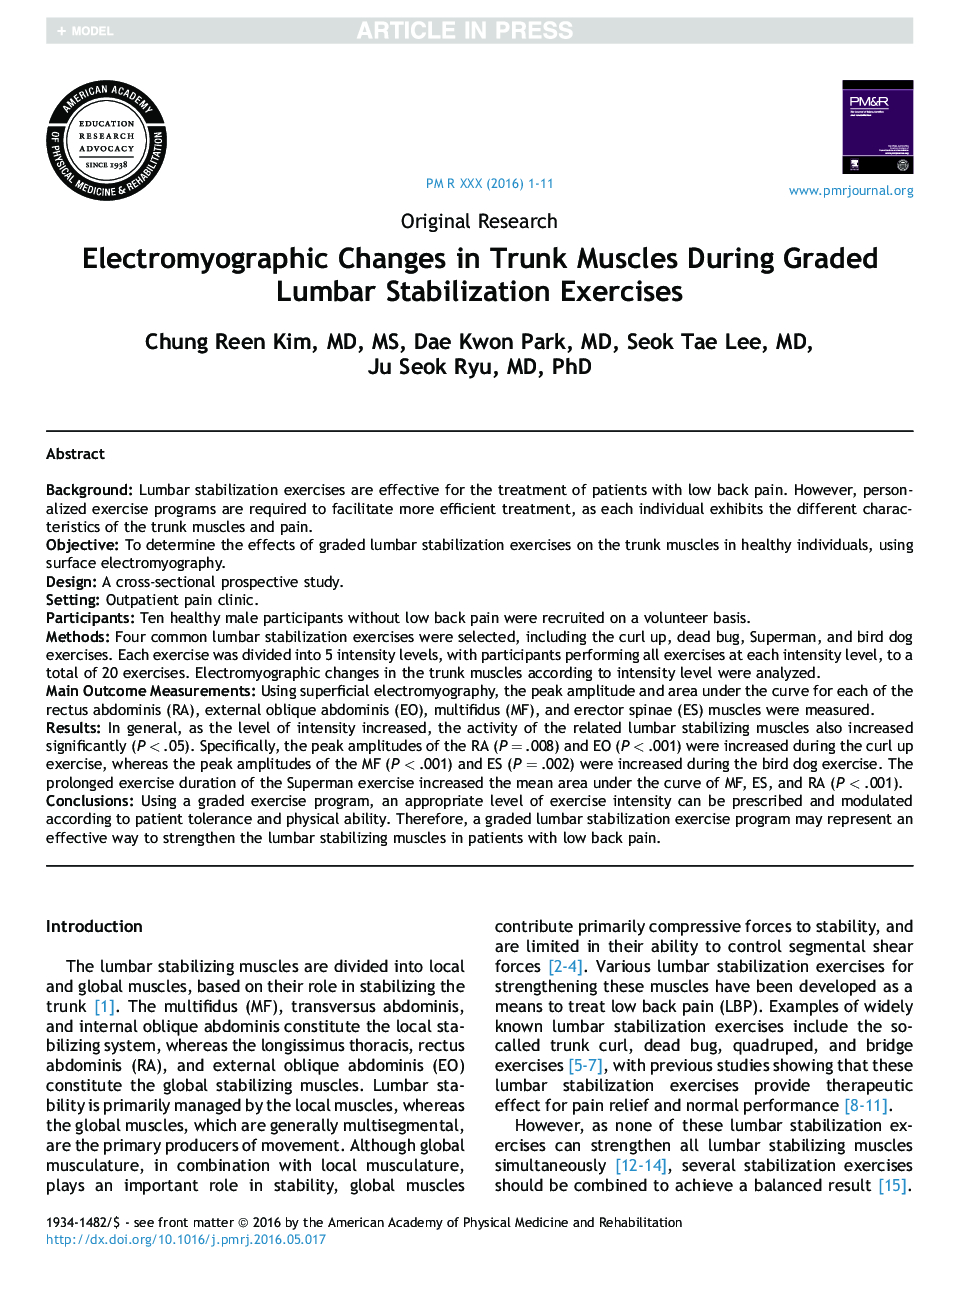 تغییرات الکترومیوگرافی در عضلات تنه در تمرینات تثبیت شده کمری 